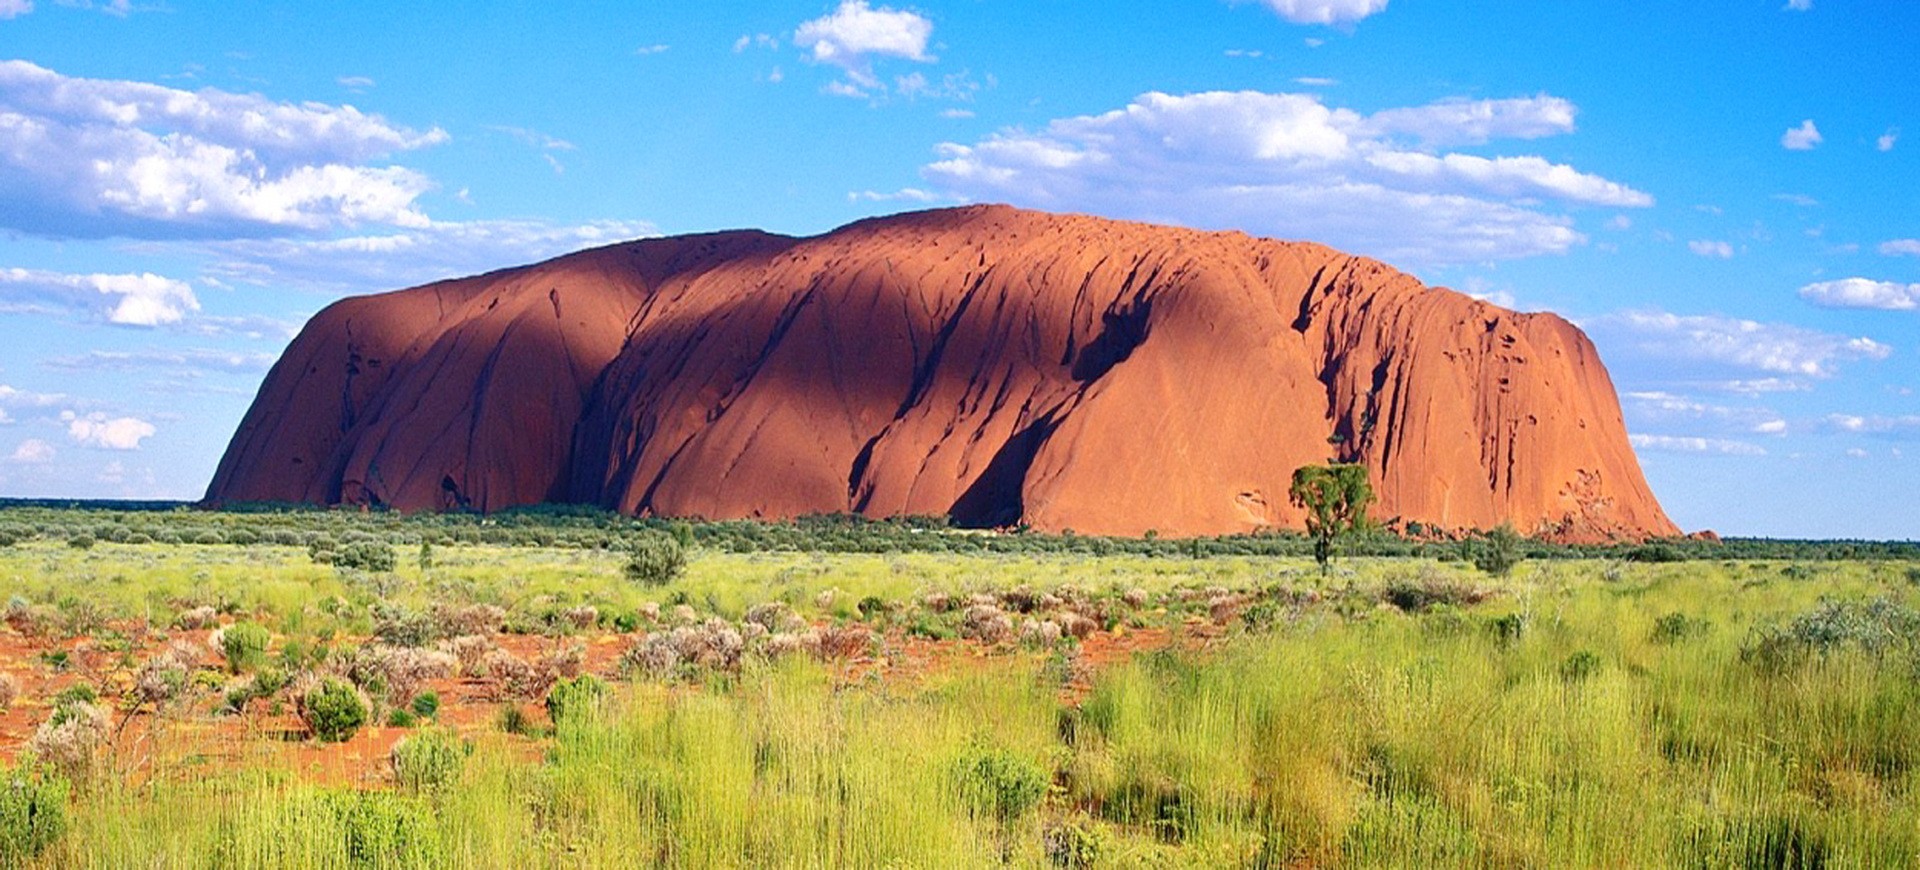 Australie Monolithe d'Ayers Rock